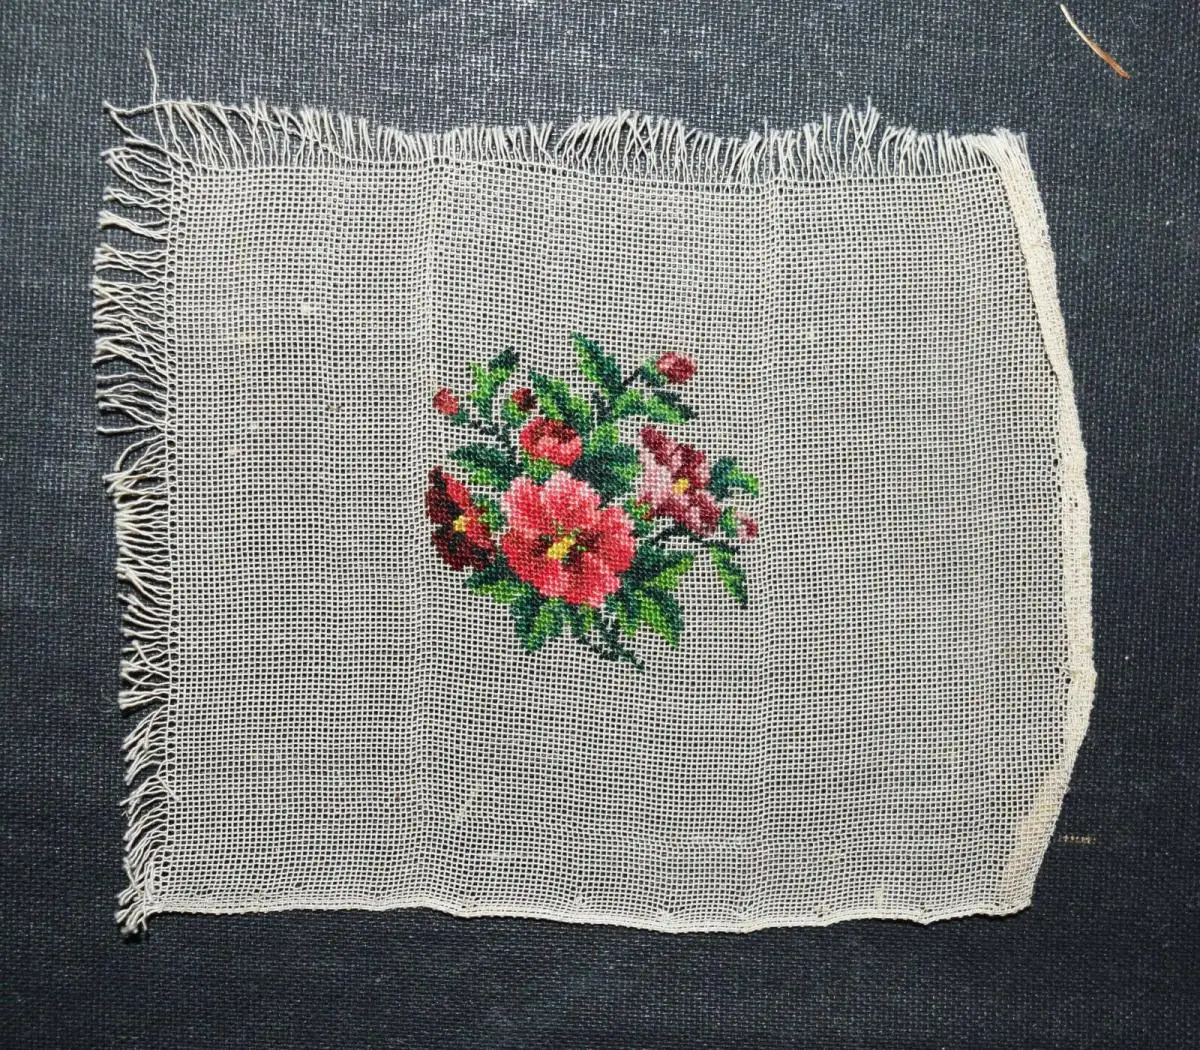 HANDWORK - EMBROIDERY ~ 1860 - The little embroiderer HANDARBEITEN STICKEREI 6